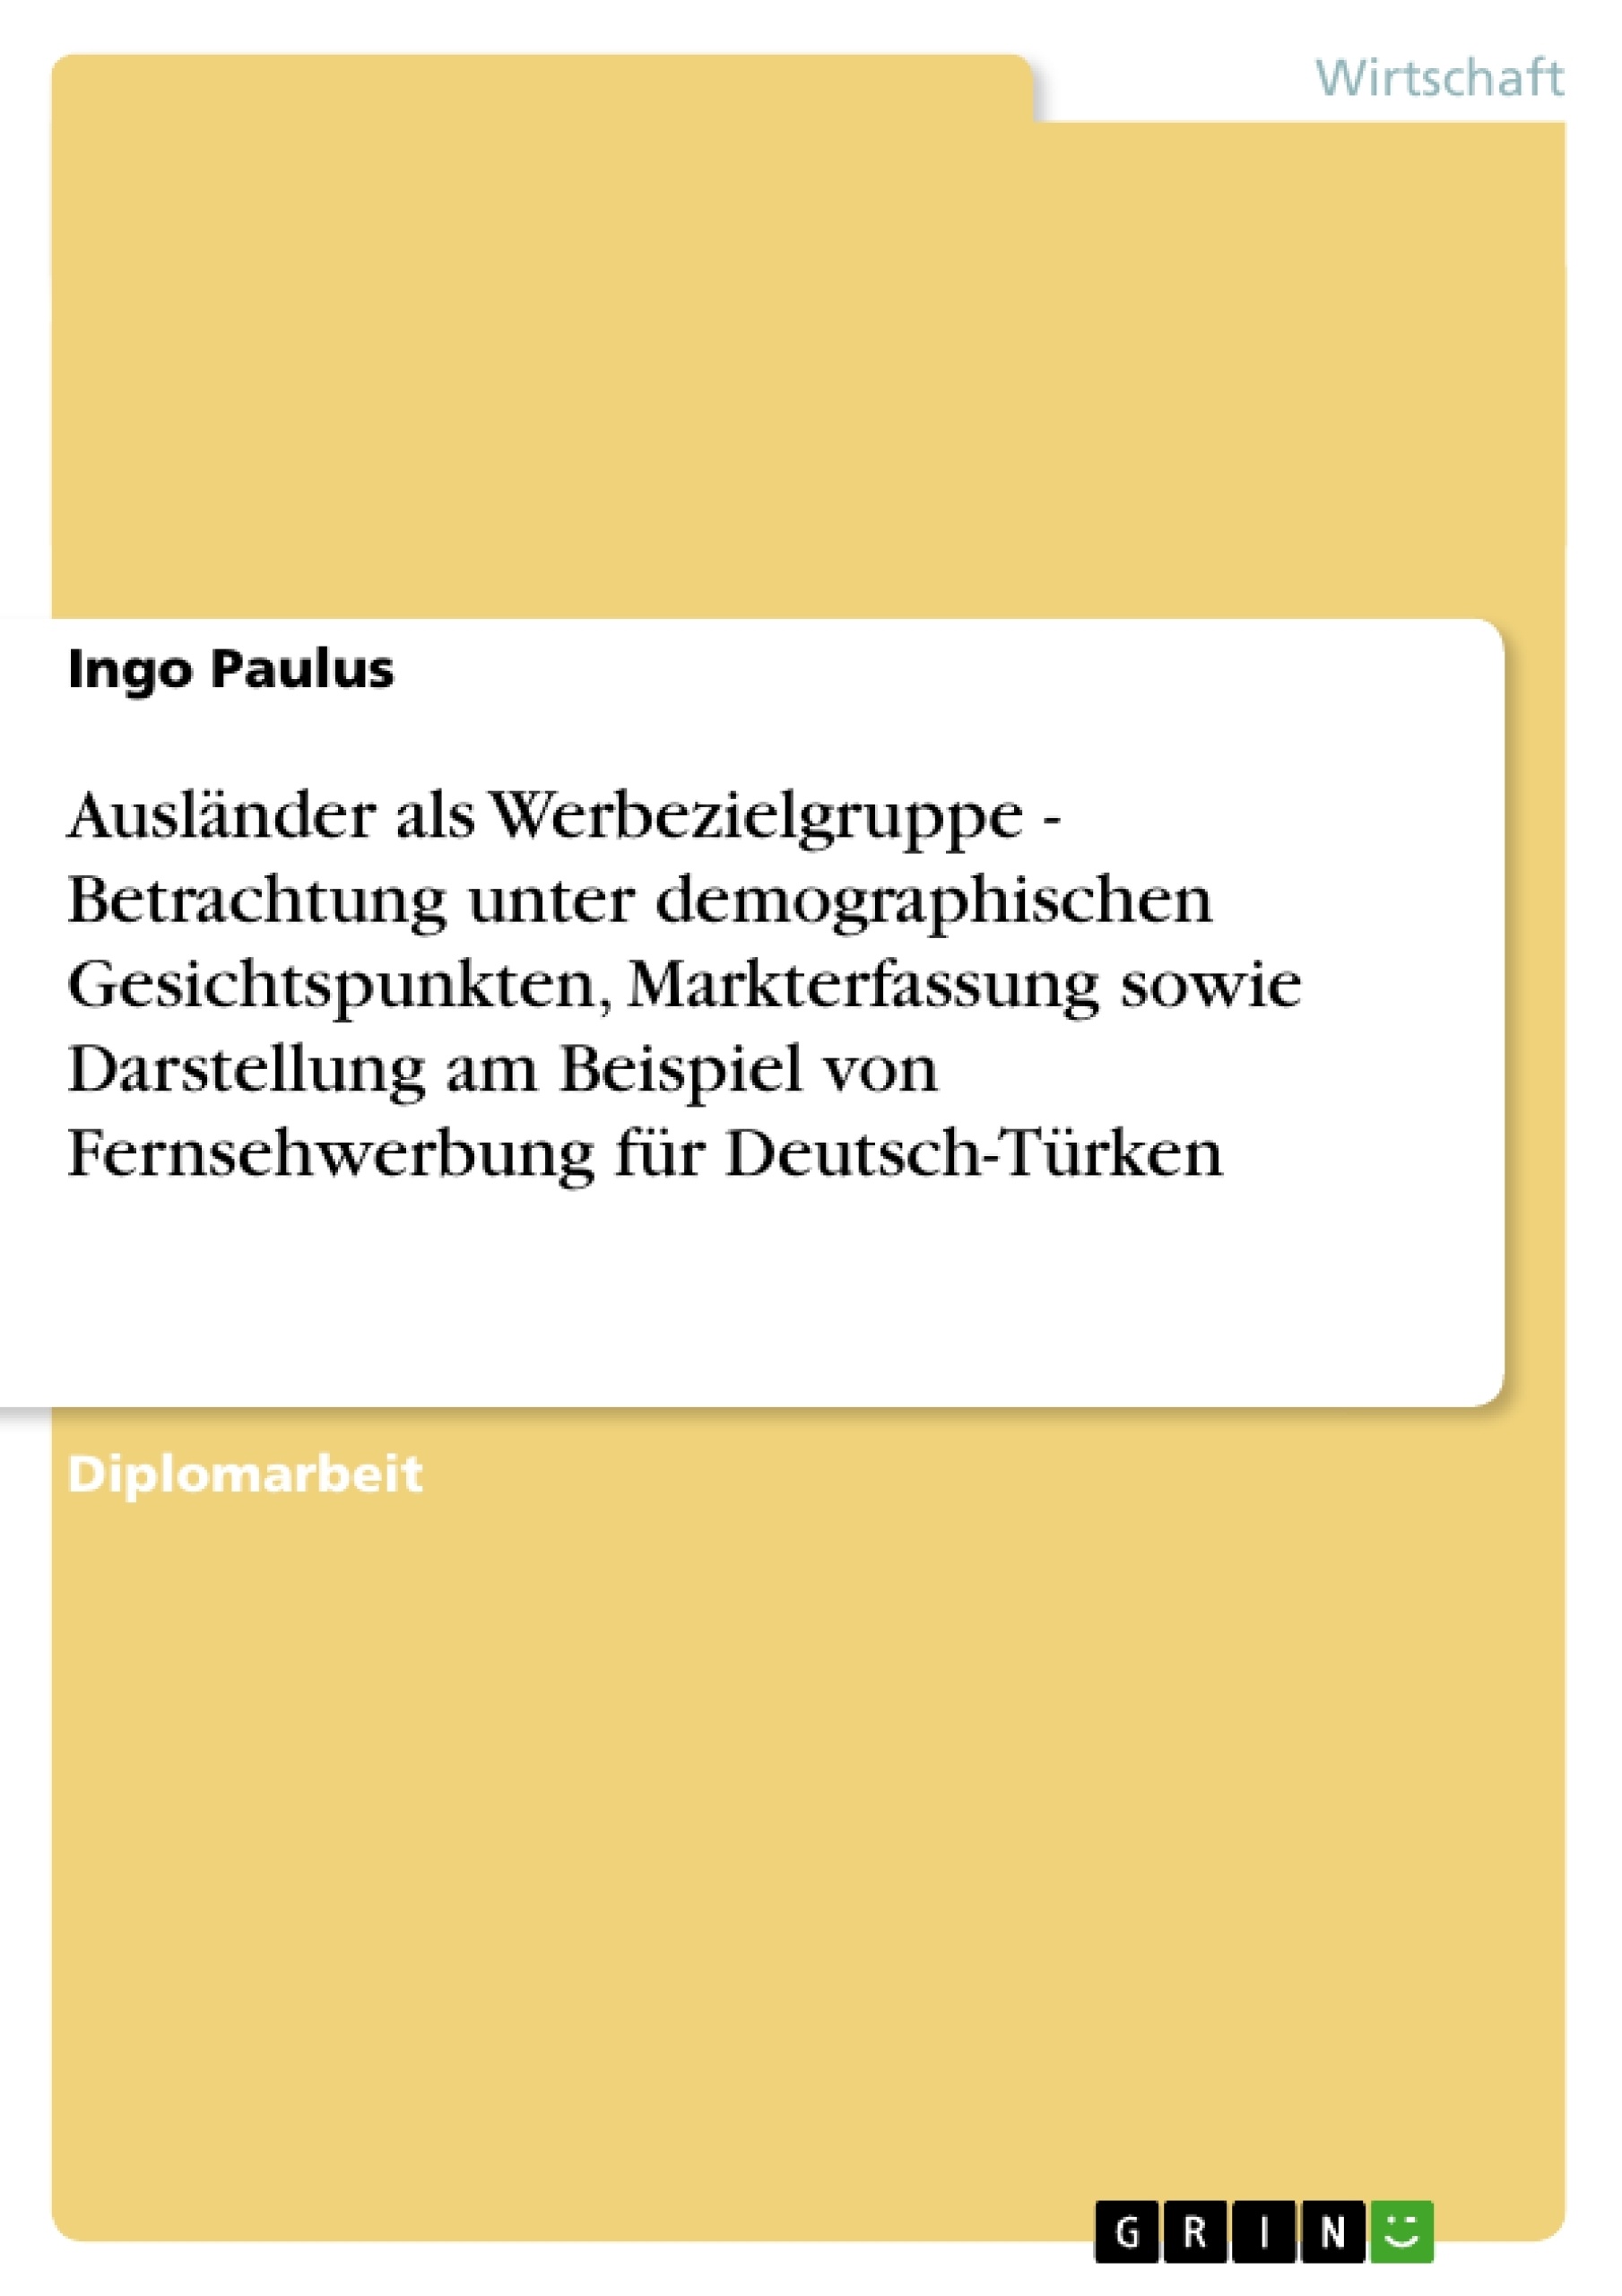 Titel: Ausländer als Werbezielgruppe - Betrachtung unter demographischen Gesichtspunkten, Markterfassung sowie Darstellung am Beispiel von Fernsehwerbung für Deutsch-Türken